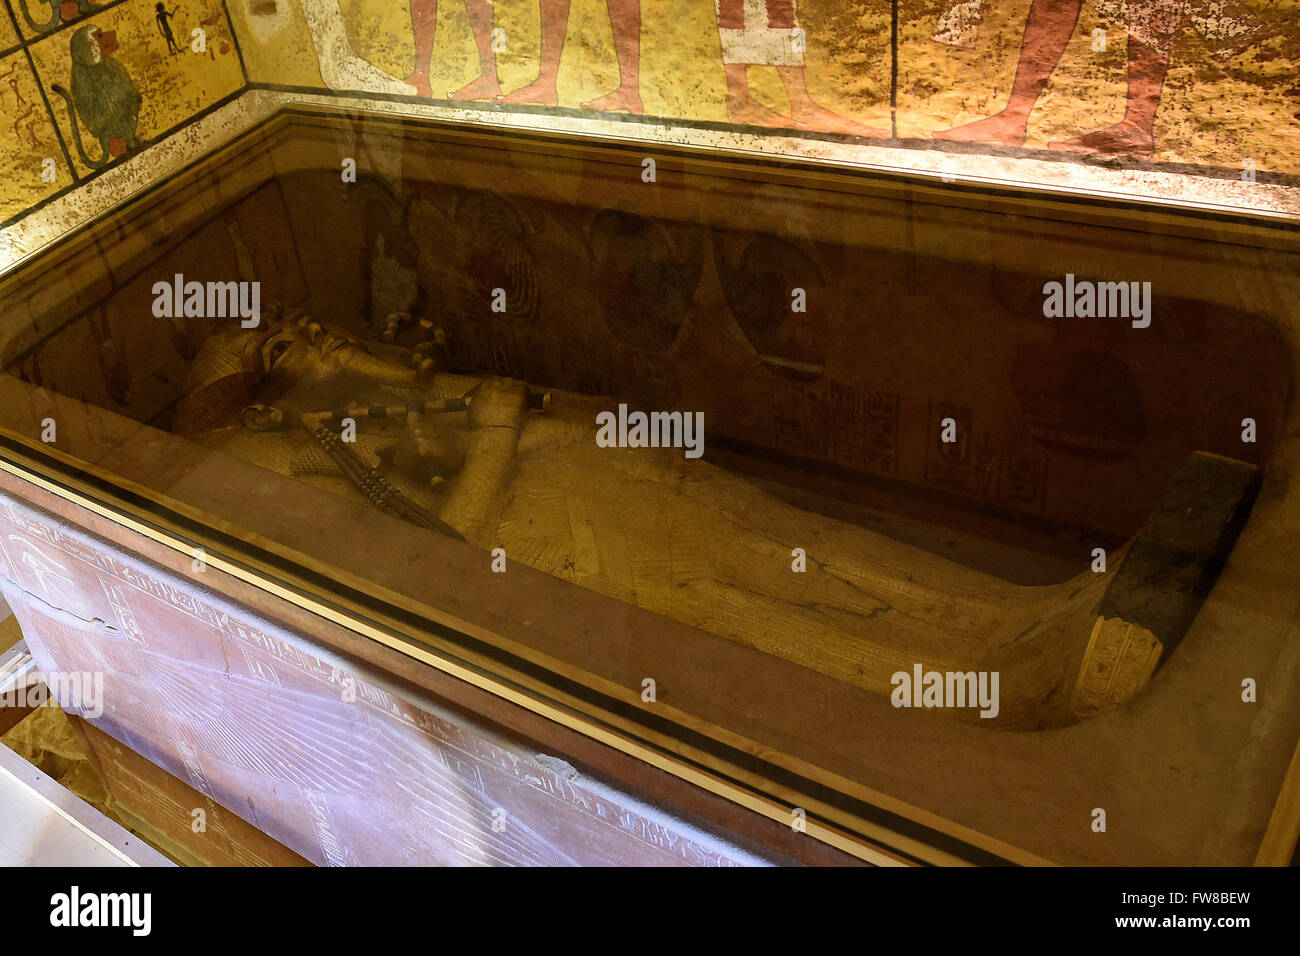 Luxor. 1. April 2016. Foto aufgenommen am 1. April 2016 zeigt den goldenen Sarkophag König Tutankhamun in seiner Grabkammer in das Tal der Könige, Luxor, Ägypten. Ägyptischen und ausländischen Archäologen abgeschlossen Freitag einen umfangreicheren Scannen-Vorgang der beiden neu entdeckten versteckten Kammern hinter König Tutankhamun Grab im Tal der Könige in Ober-Ägypten-Luxor-Stadt. Die Kammern werden geglaubt, um letzten Platz der Königin Nefertiti aufliegen spielte eine wichtige politische und religiöse Rolle in Ägypten in das 14. Jahrhundert v. Chr. © Zhao Dingzhe/Xinhua/Alamy Live News Stockfoto